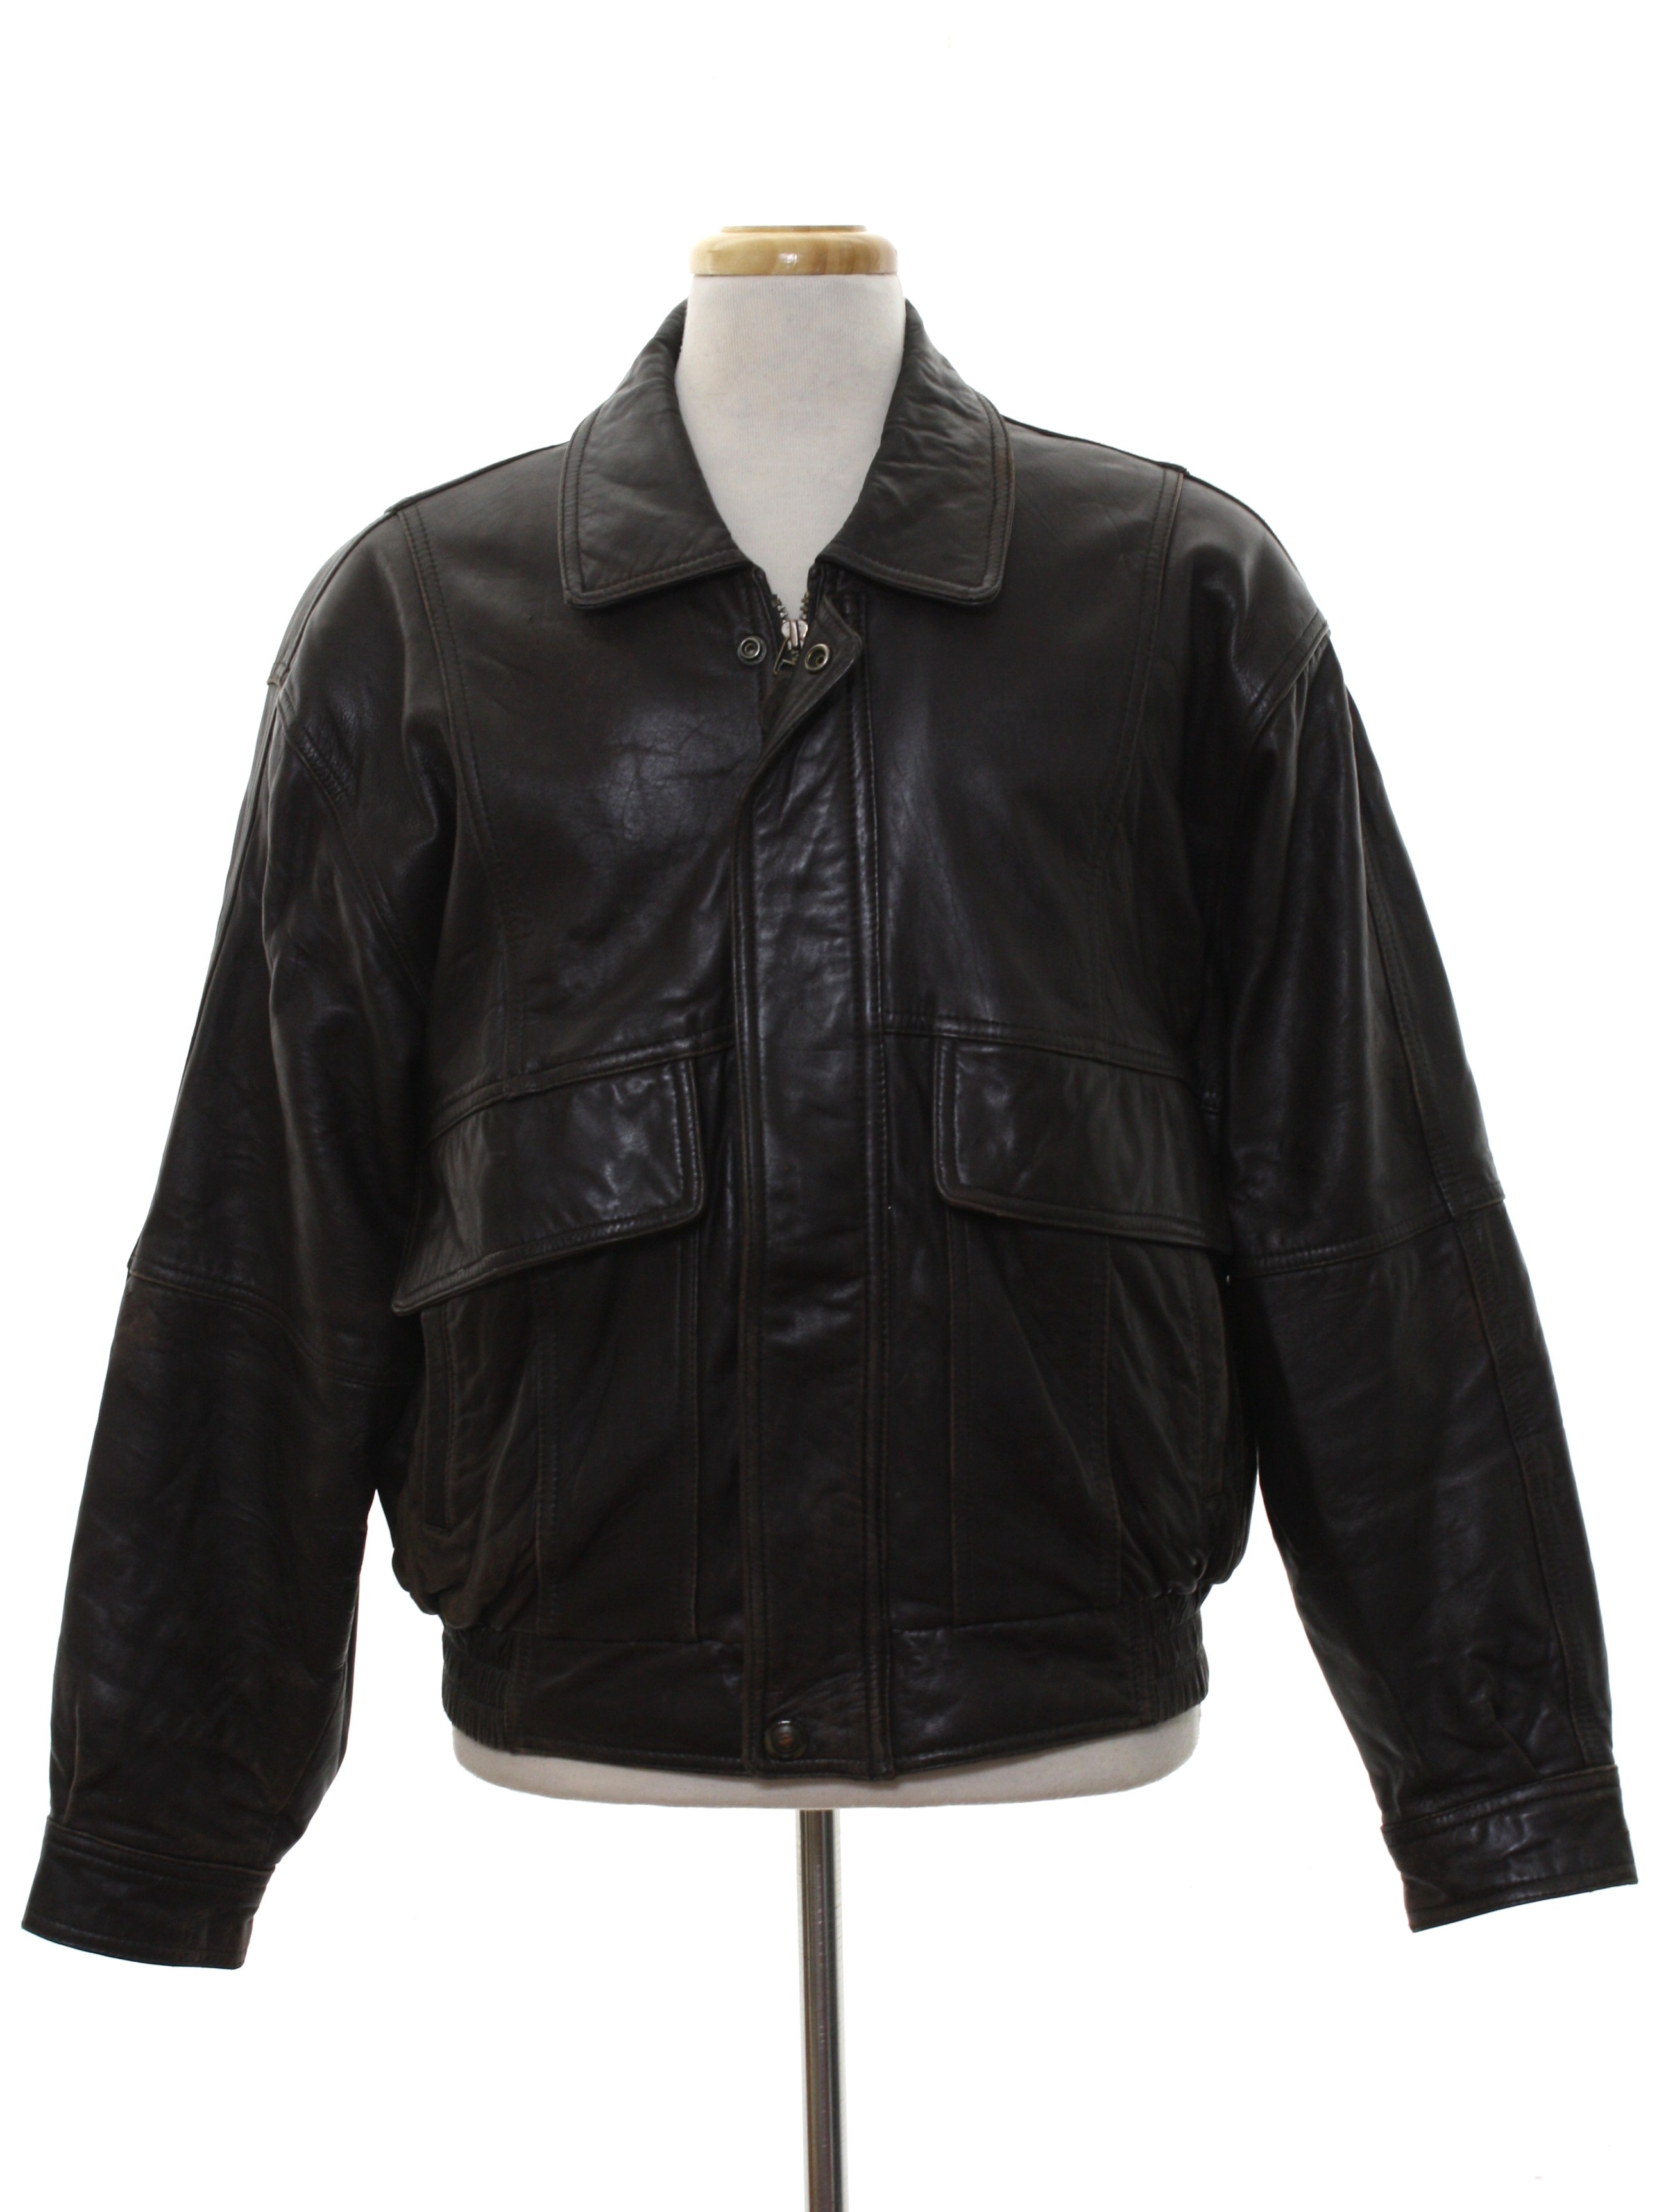 Retro Eighties Leather Jacket: 80s -Members Only- Mens dark brown ...